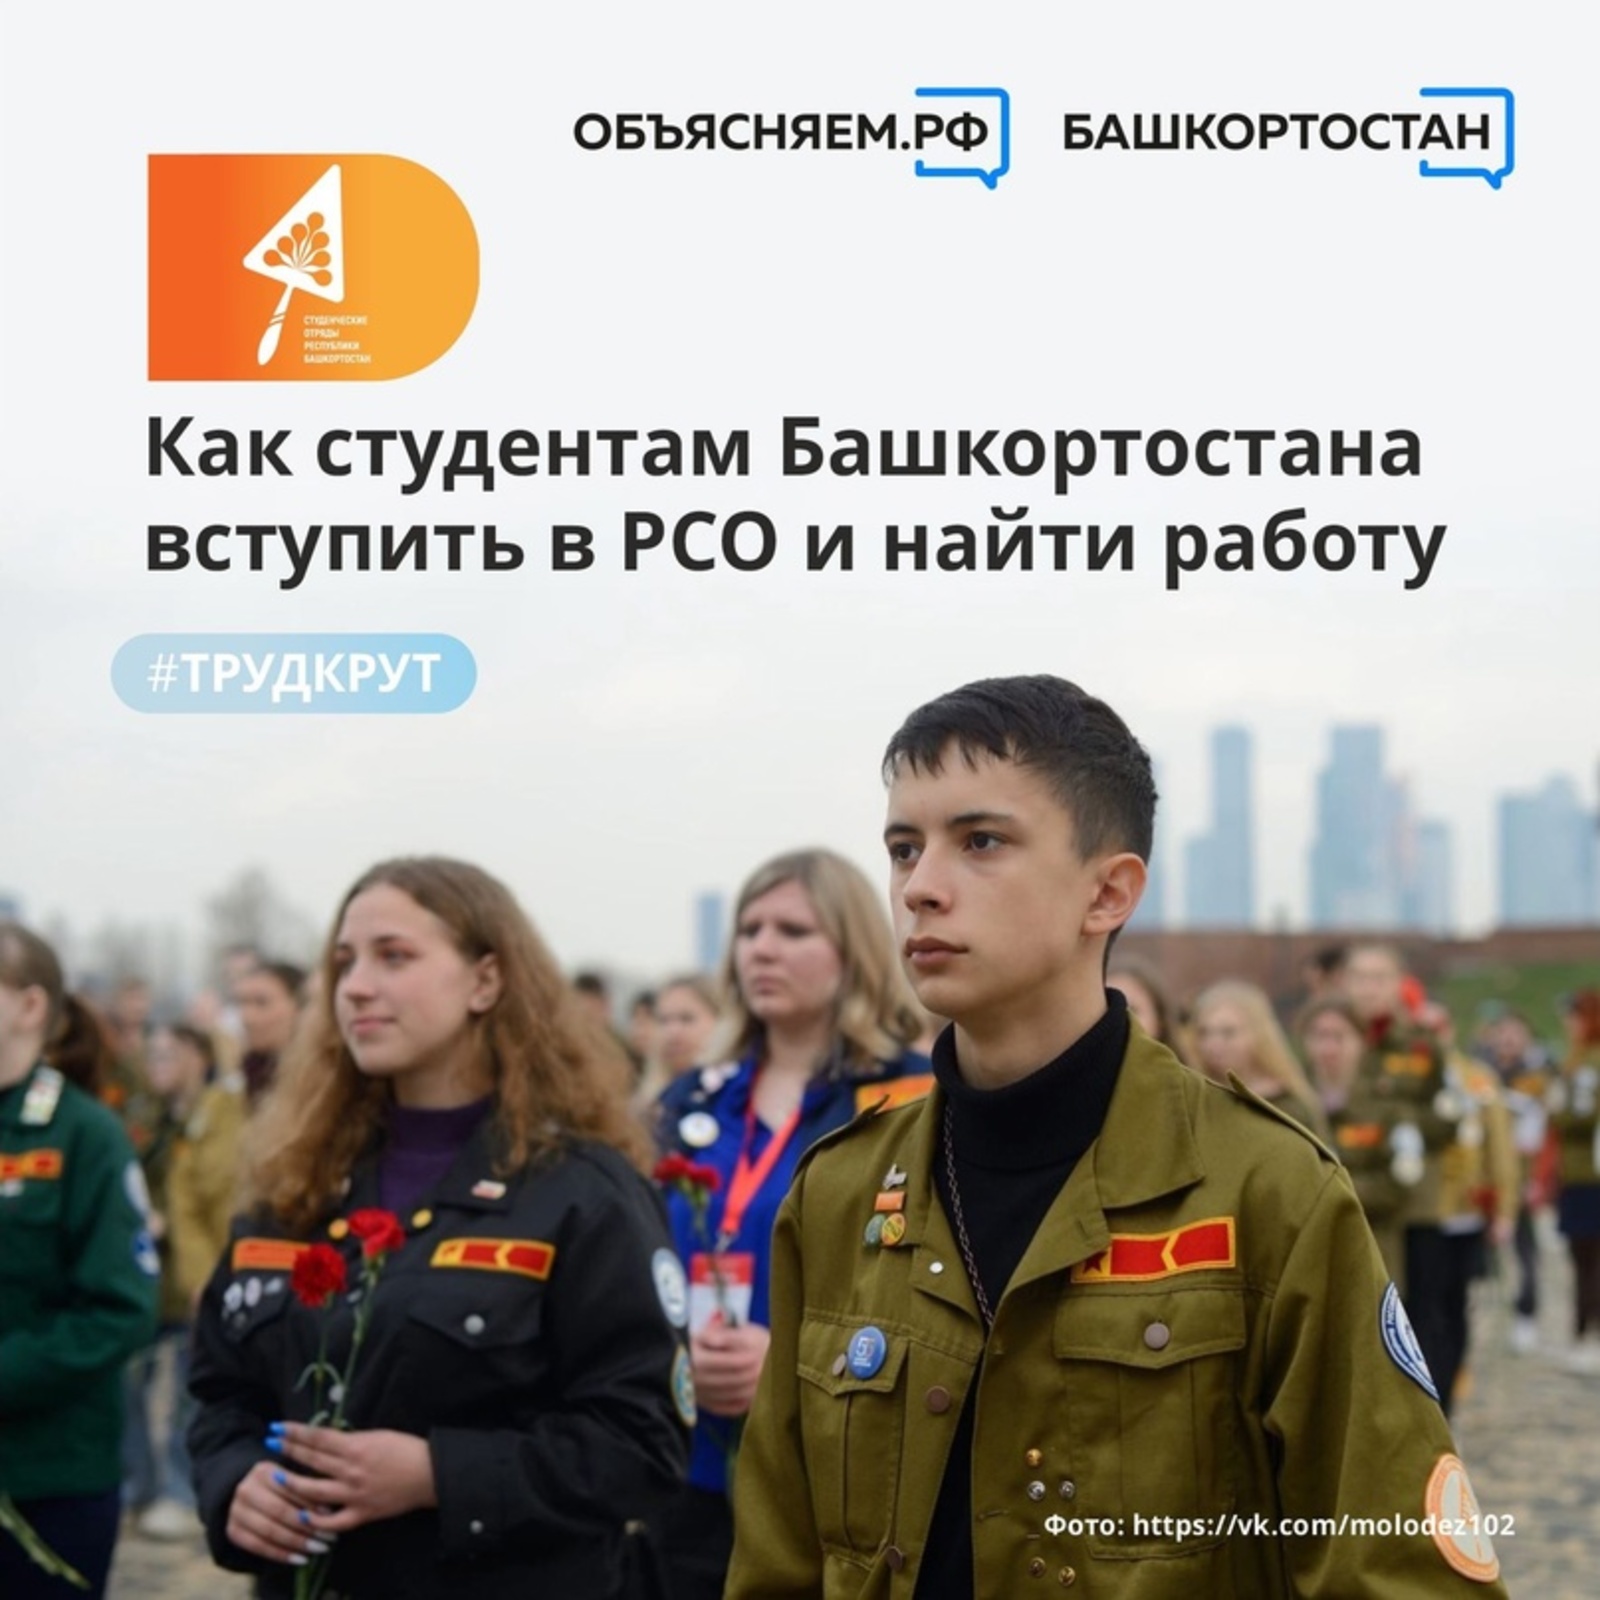 Студенты из Башкортостана могут найти официальную работу благодаря участию в Российских студенческих отрядах